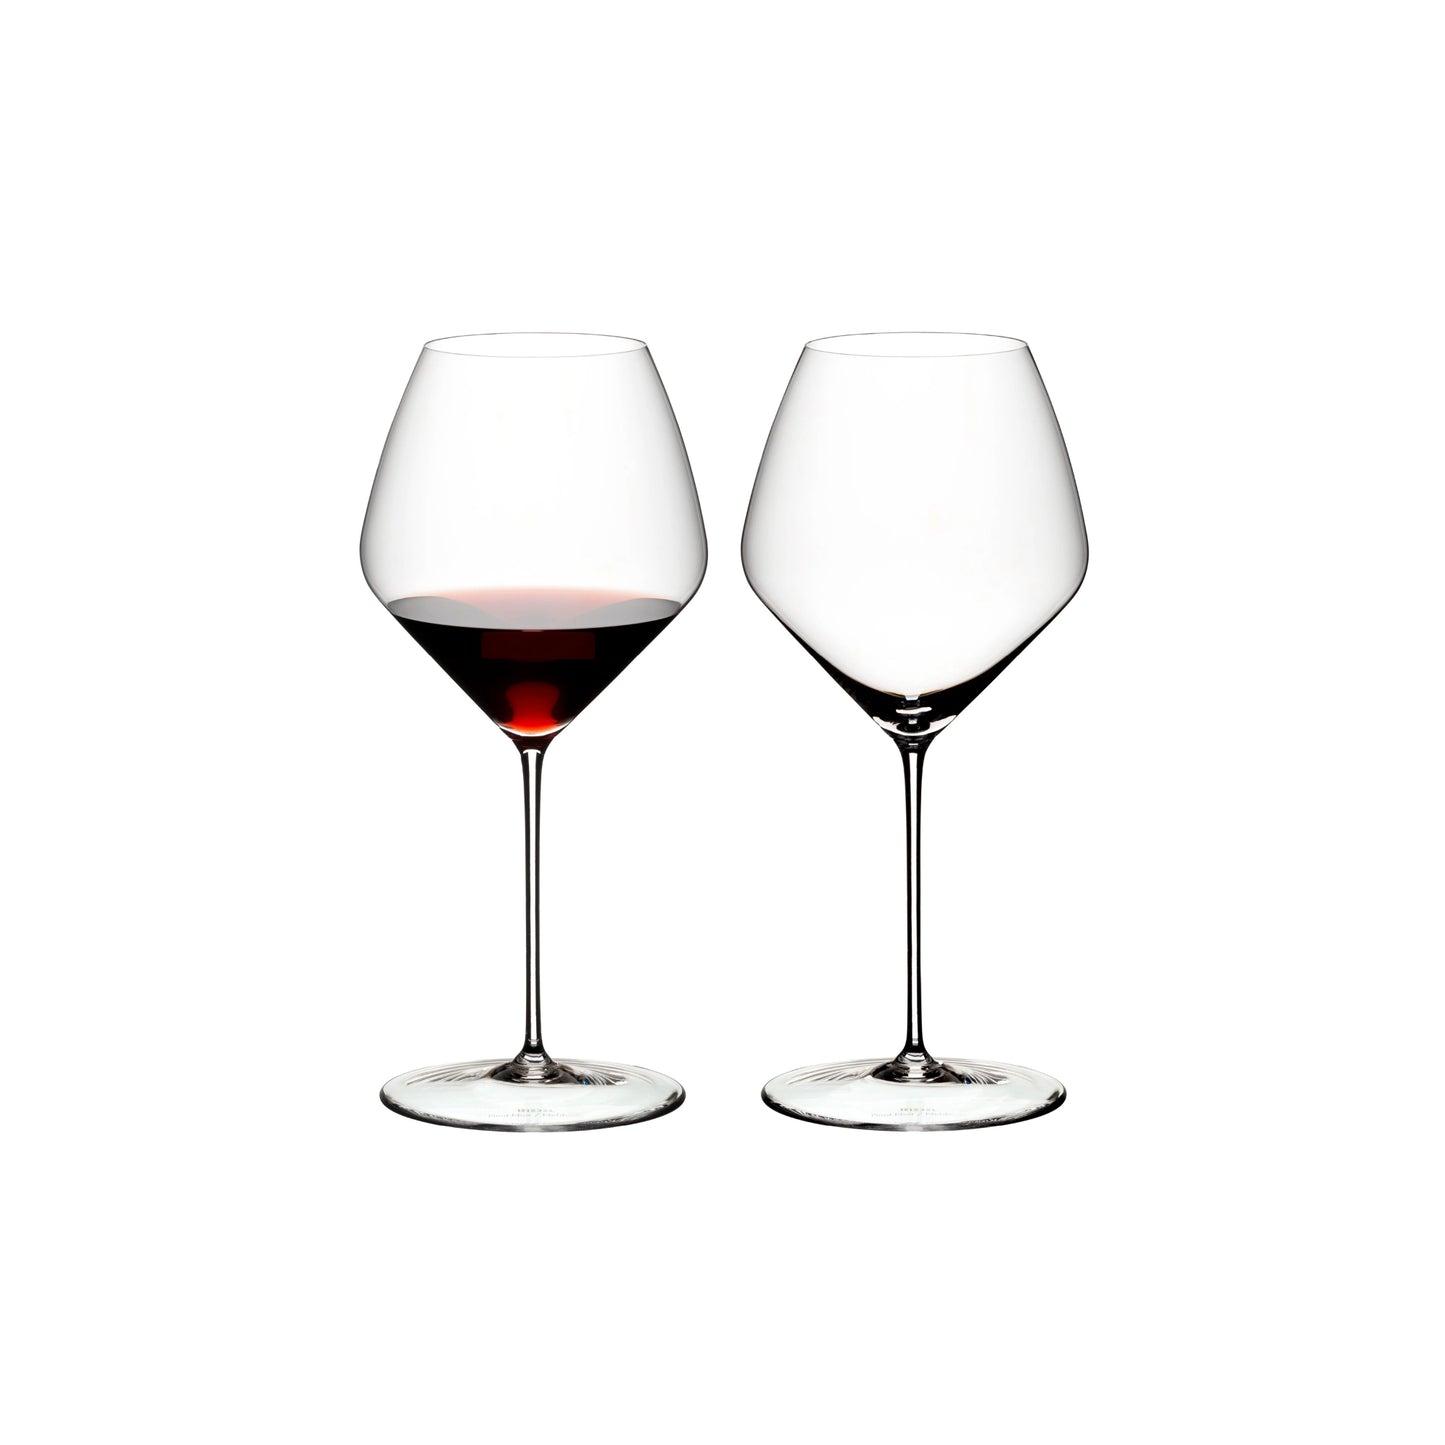 RIEDEL Veloce Calice Vino Rosso Pinot Nero Nebbiolo Set 2 Pezzi 765ml Cristallo